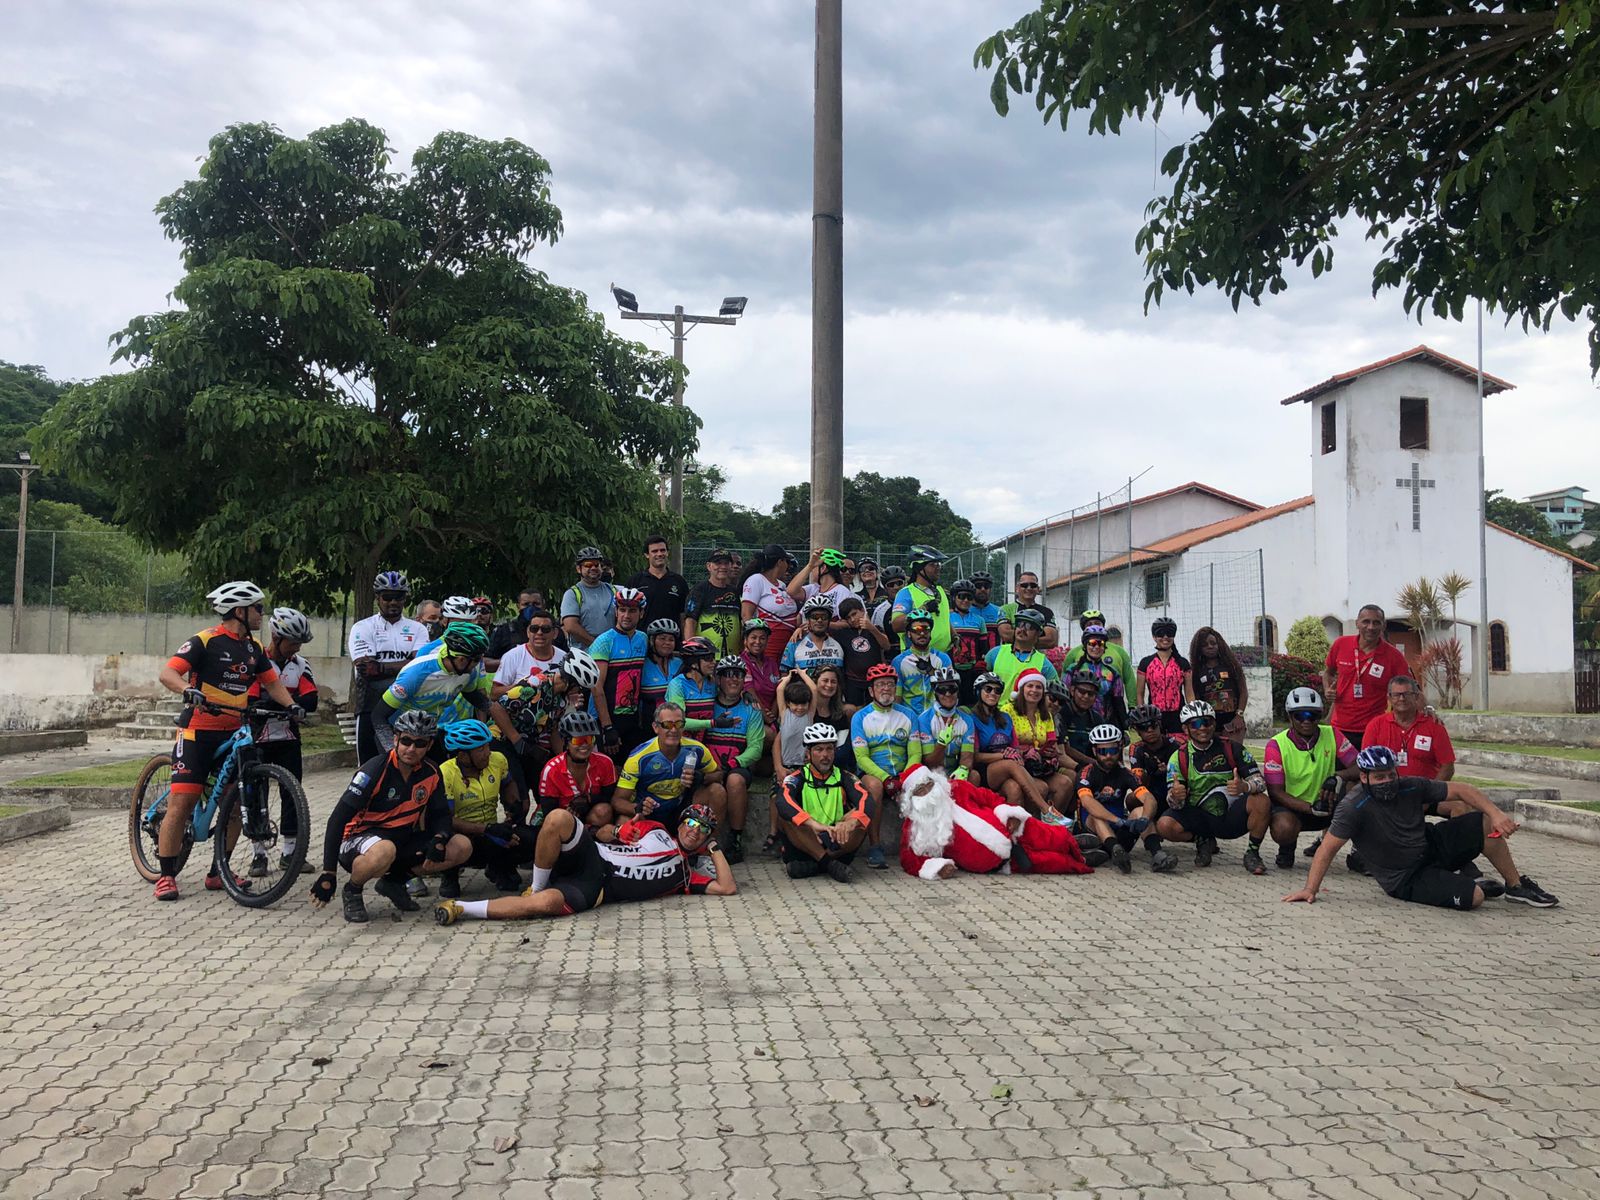 Eventos reuniram centenas de ciclistas na Praça Hermógenes Freire da Costa